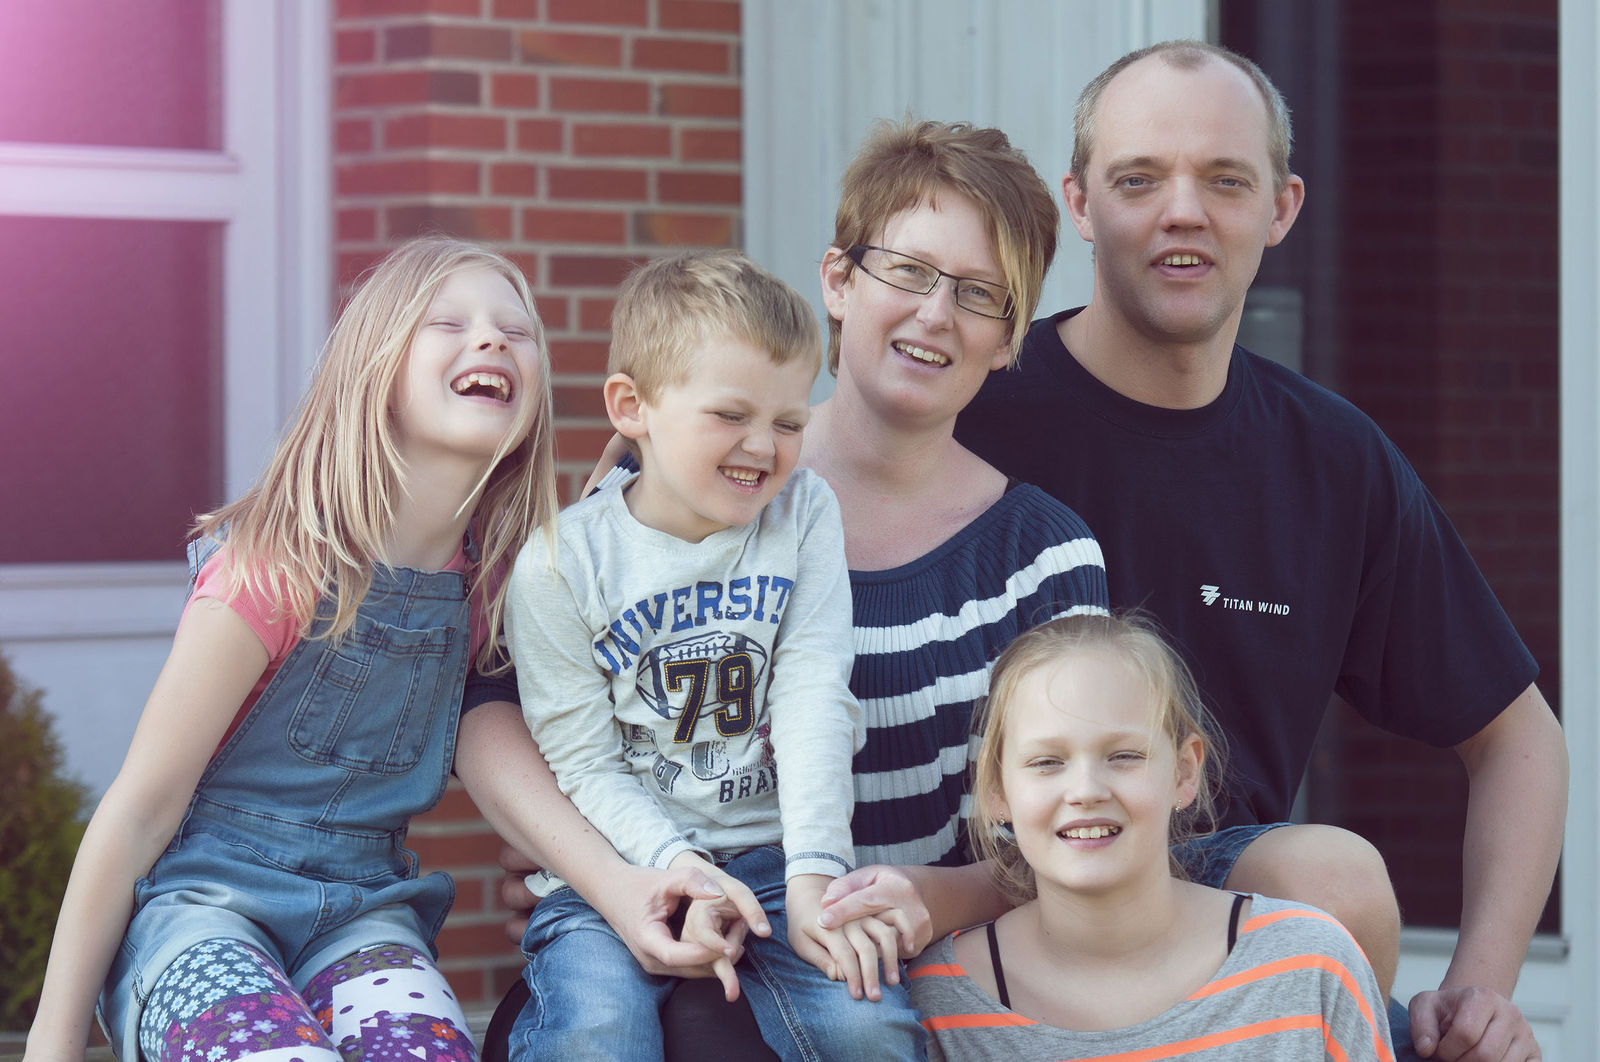 История жизни обычной семьи 37. Семья датчан. Обычная семья. Семейные фотосессии обычные.